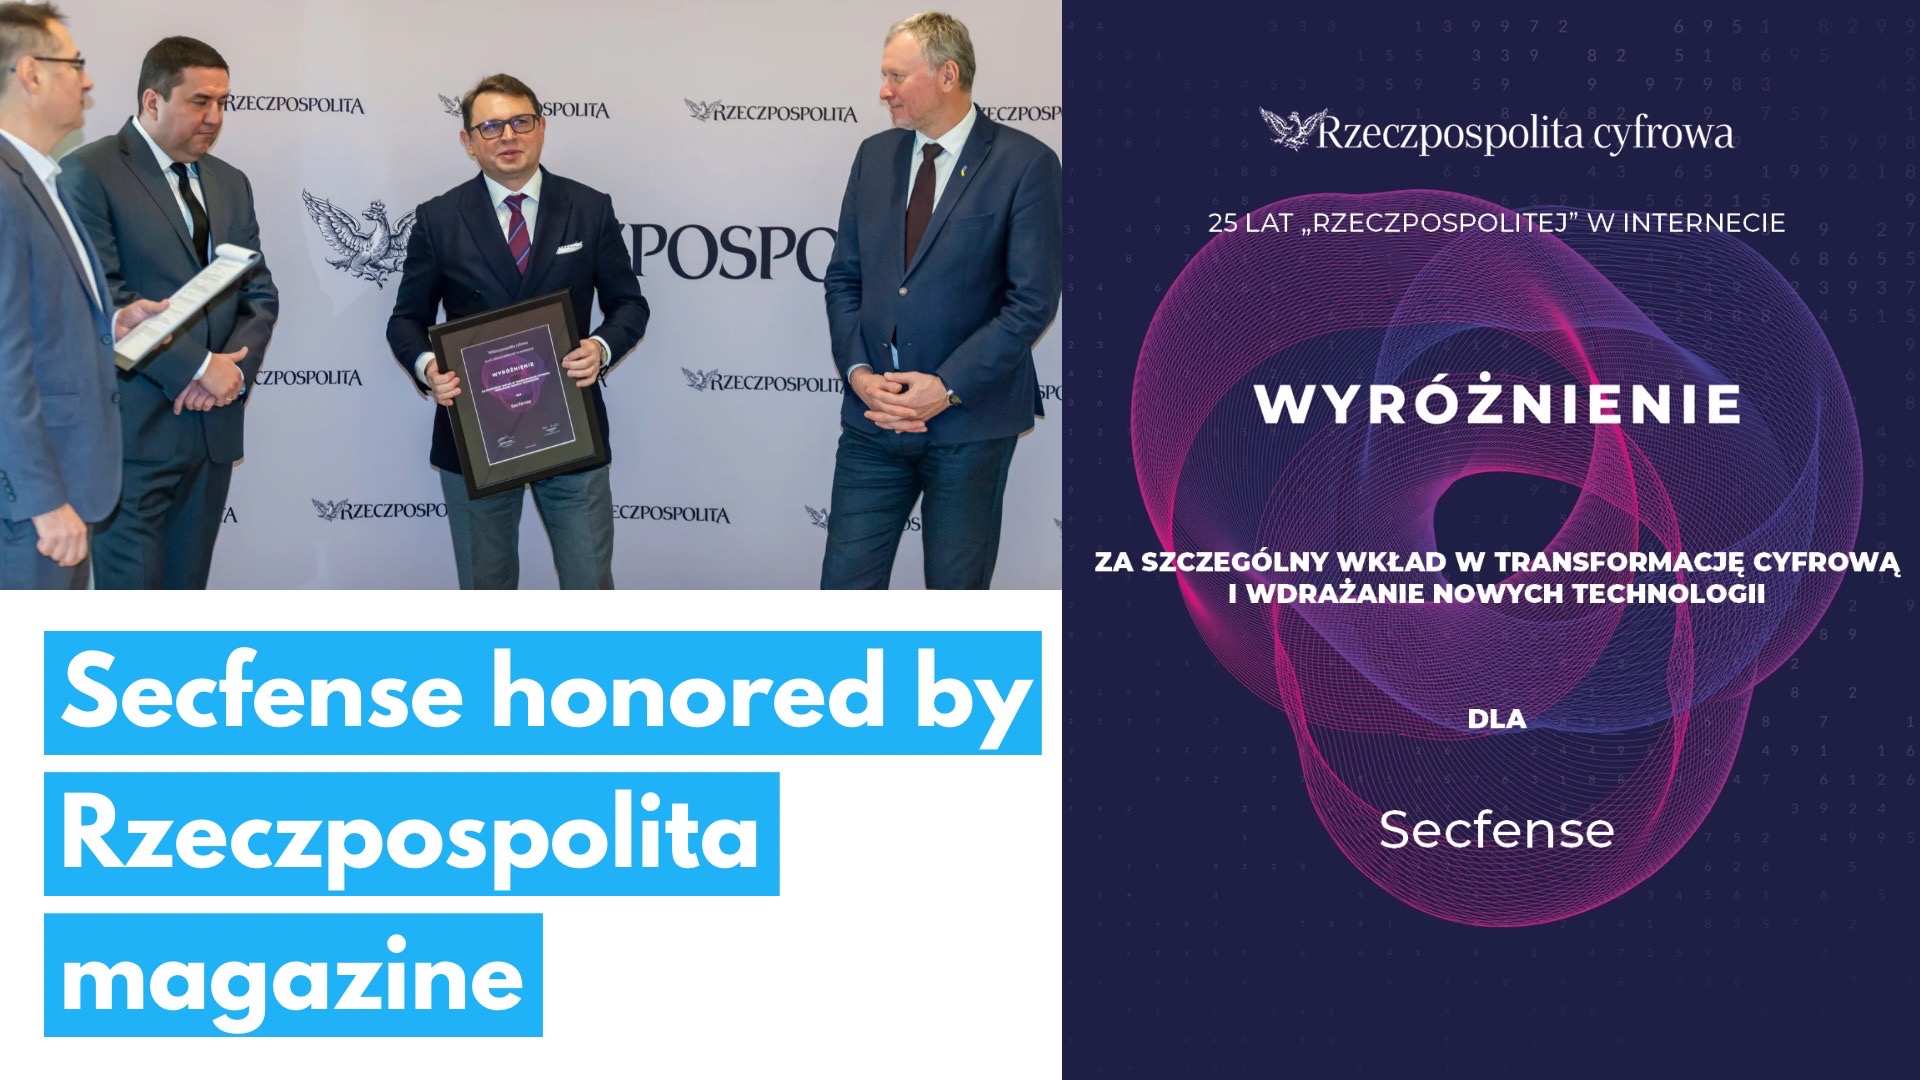 Secfense honored by Rzeczpospolita magazine